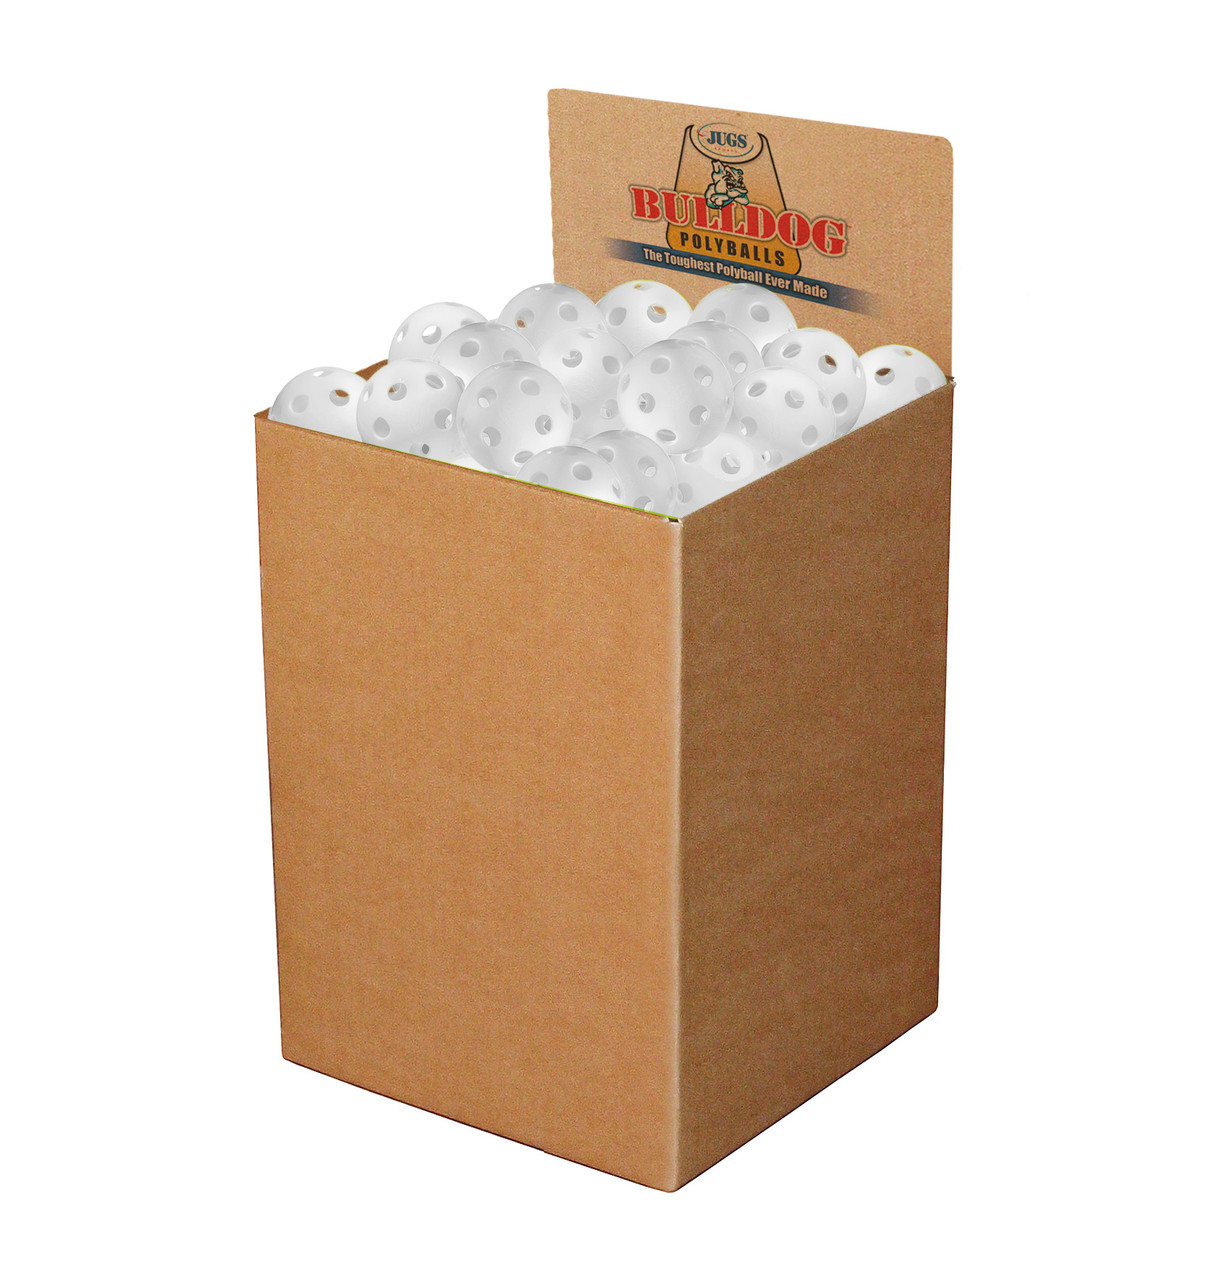 Bulk Box of Bulldog™ Baseballs or Softballs